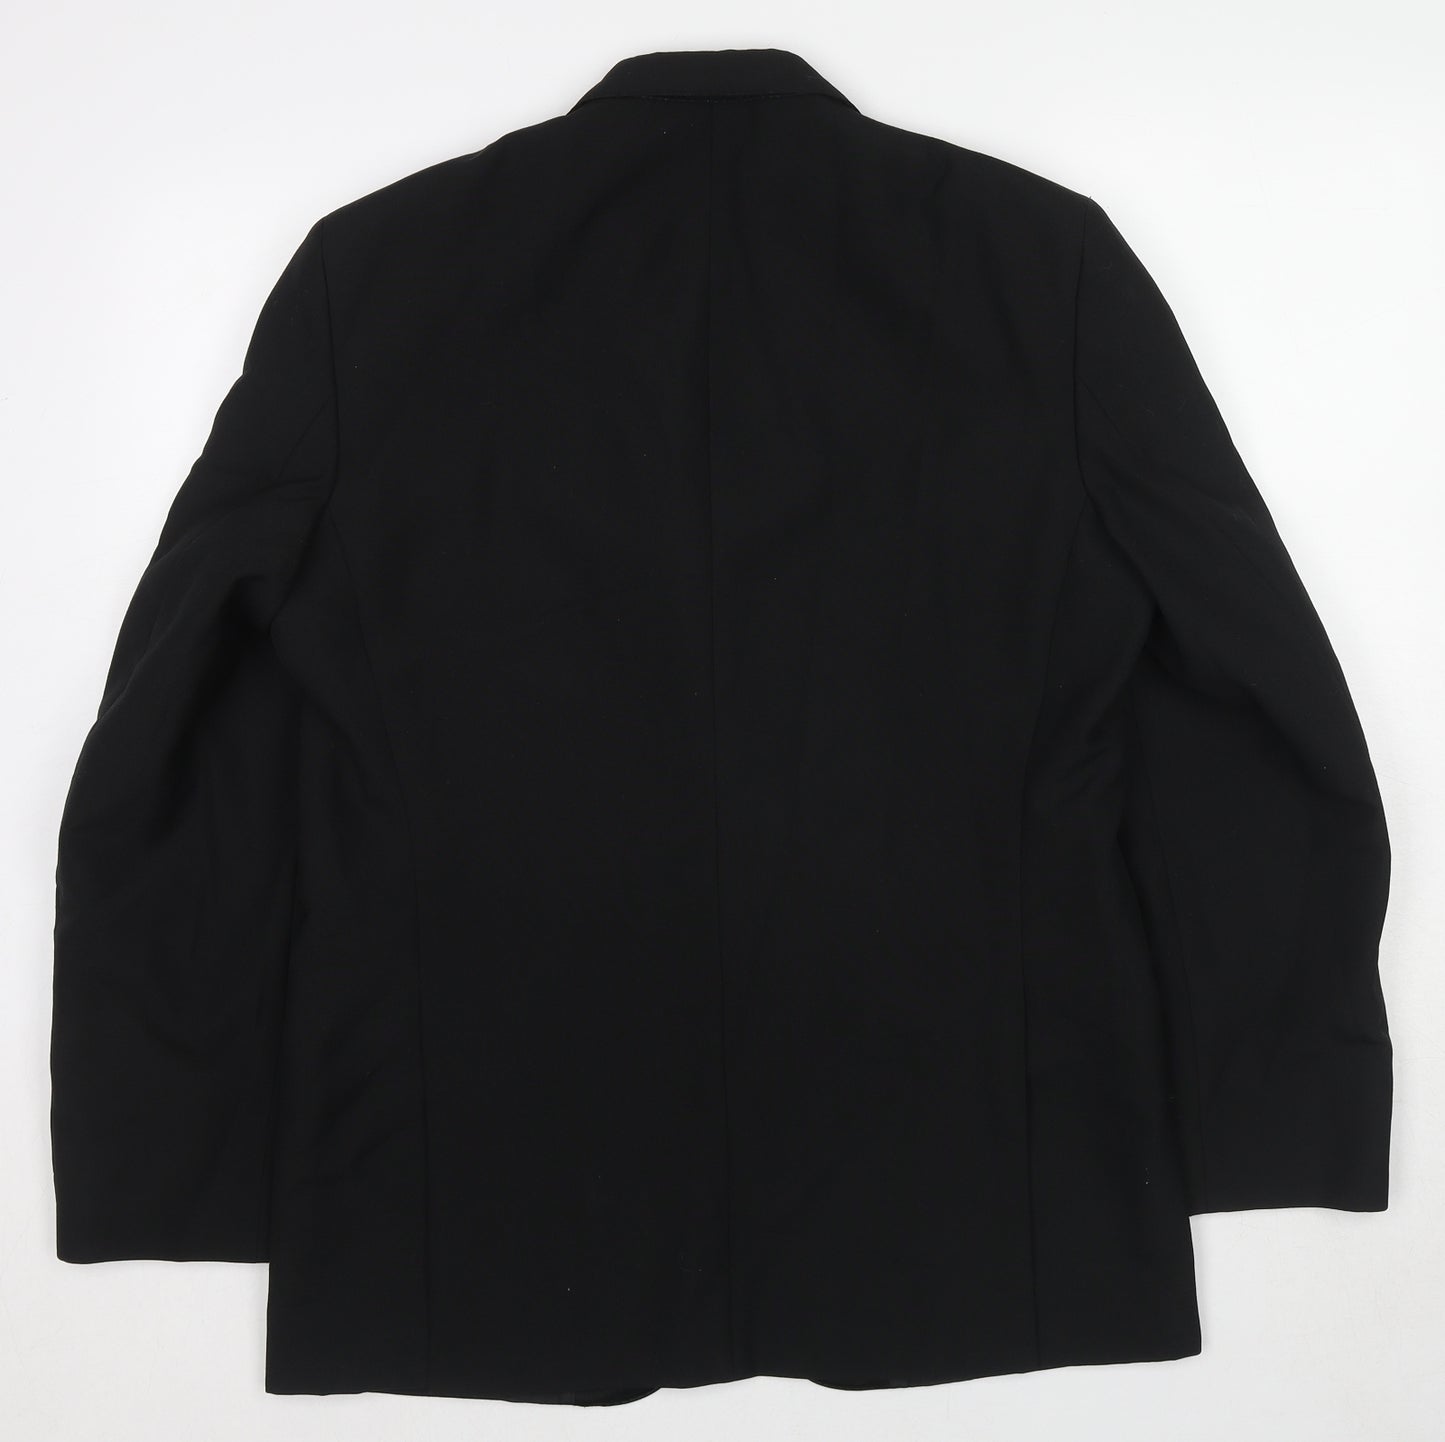 Chatsworth Mens Black Polyester Tuxedo Suit Jacket Size 46 Regular